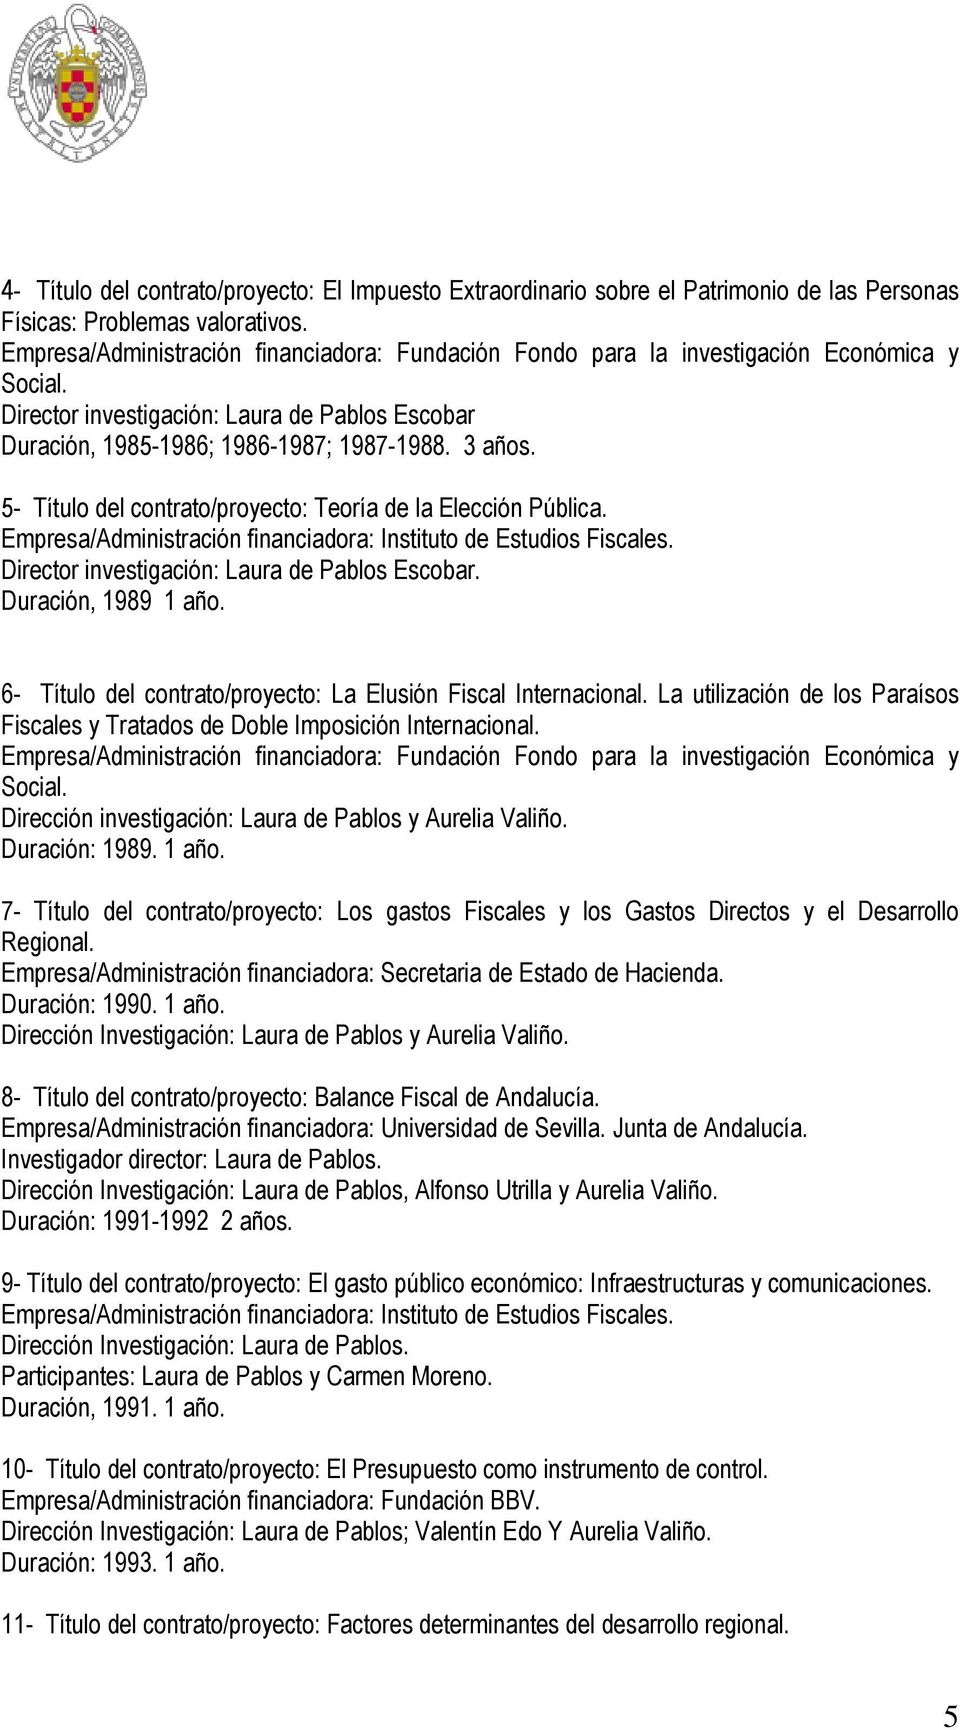 5- Título del contrato/proyecto: Teoría de la Elección Pública. Empresa/Administración financiadora: Instituto de Estudios Fiscales. Director investigación: Laura de Pablos Escobar.